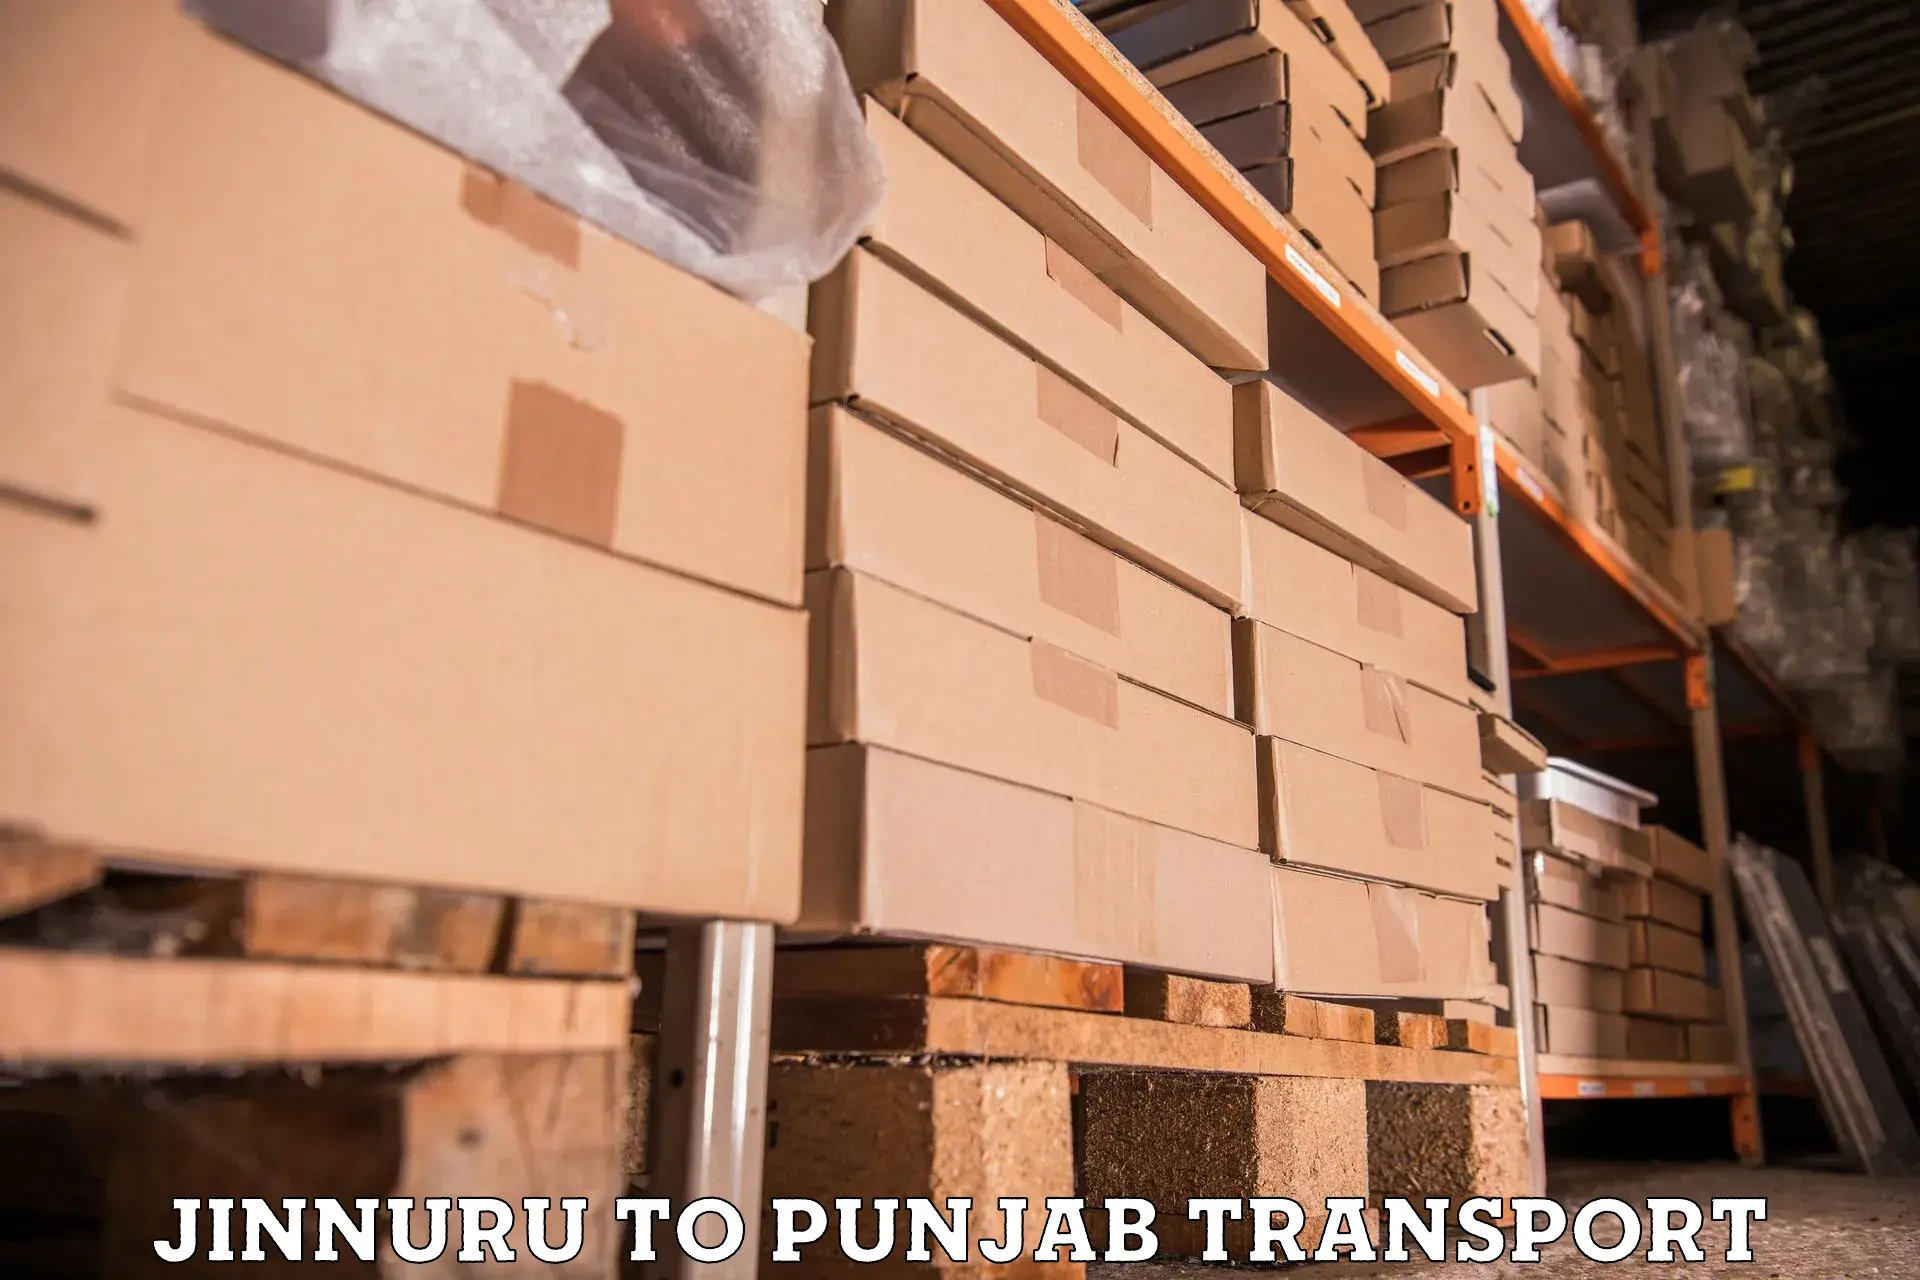 Cargo transport services in Jinnuru to Punjab